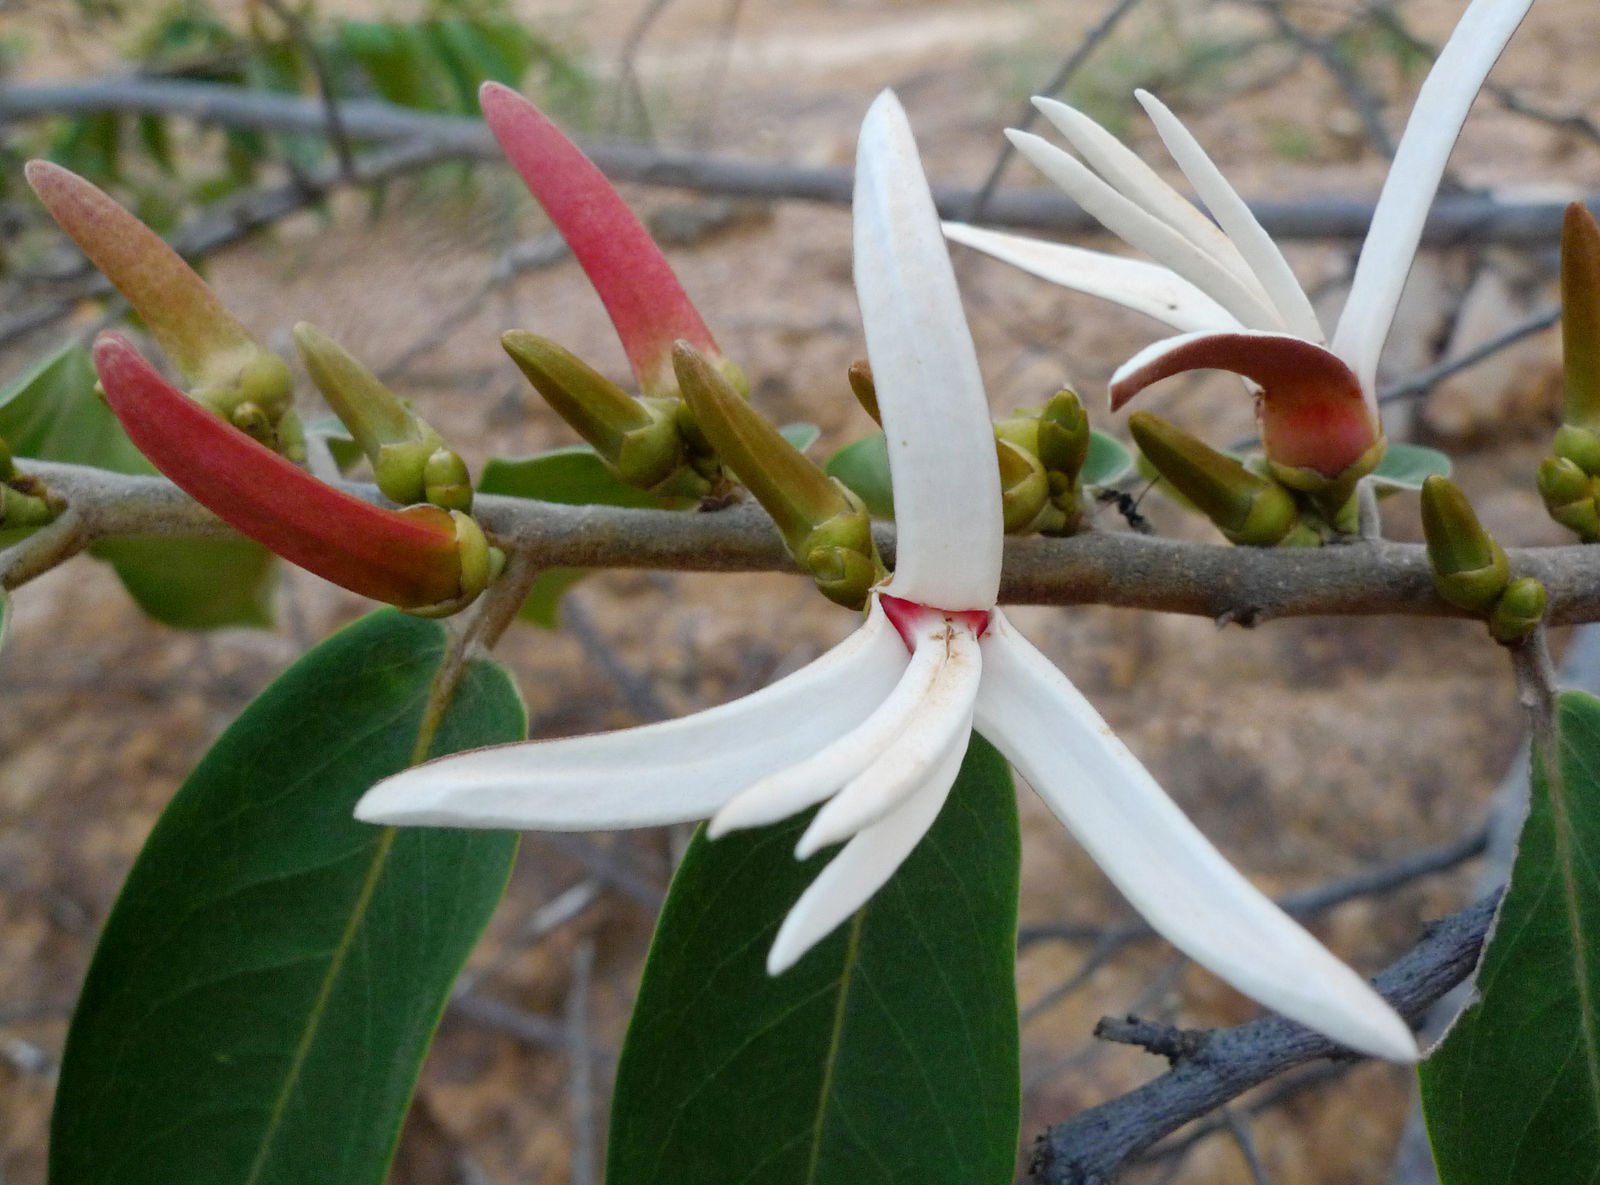 Biologia floral, fenologia reprodutiva e polinização de Xylopia aromatica  (Lam.) Mart. (Annonaceae) em uma área de Cerrado no oeste da Bahia